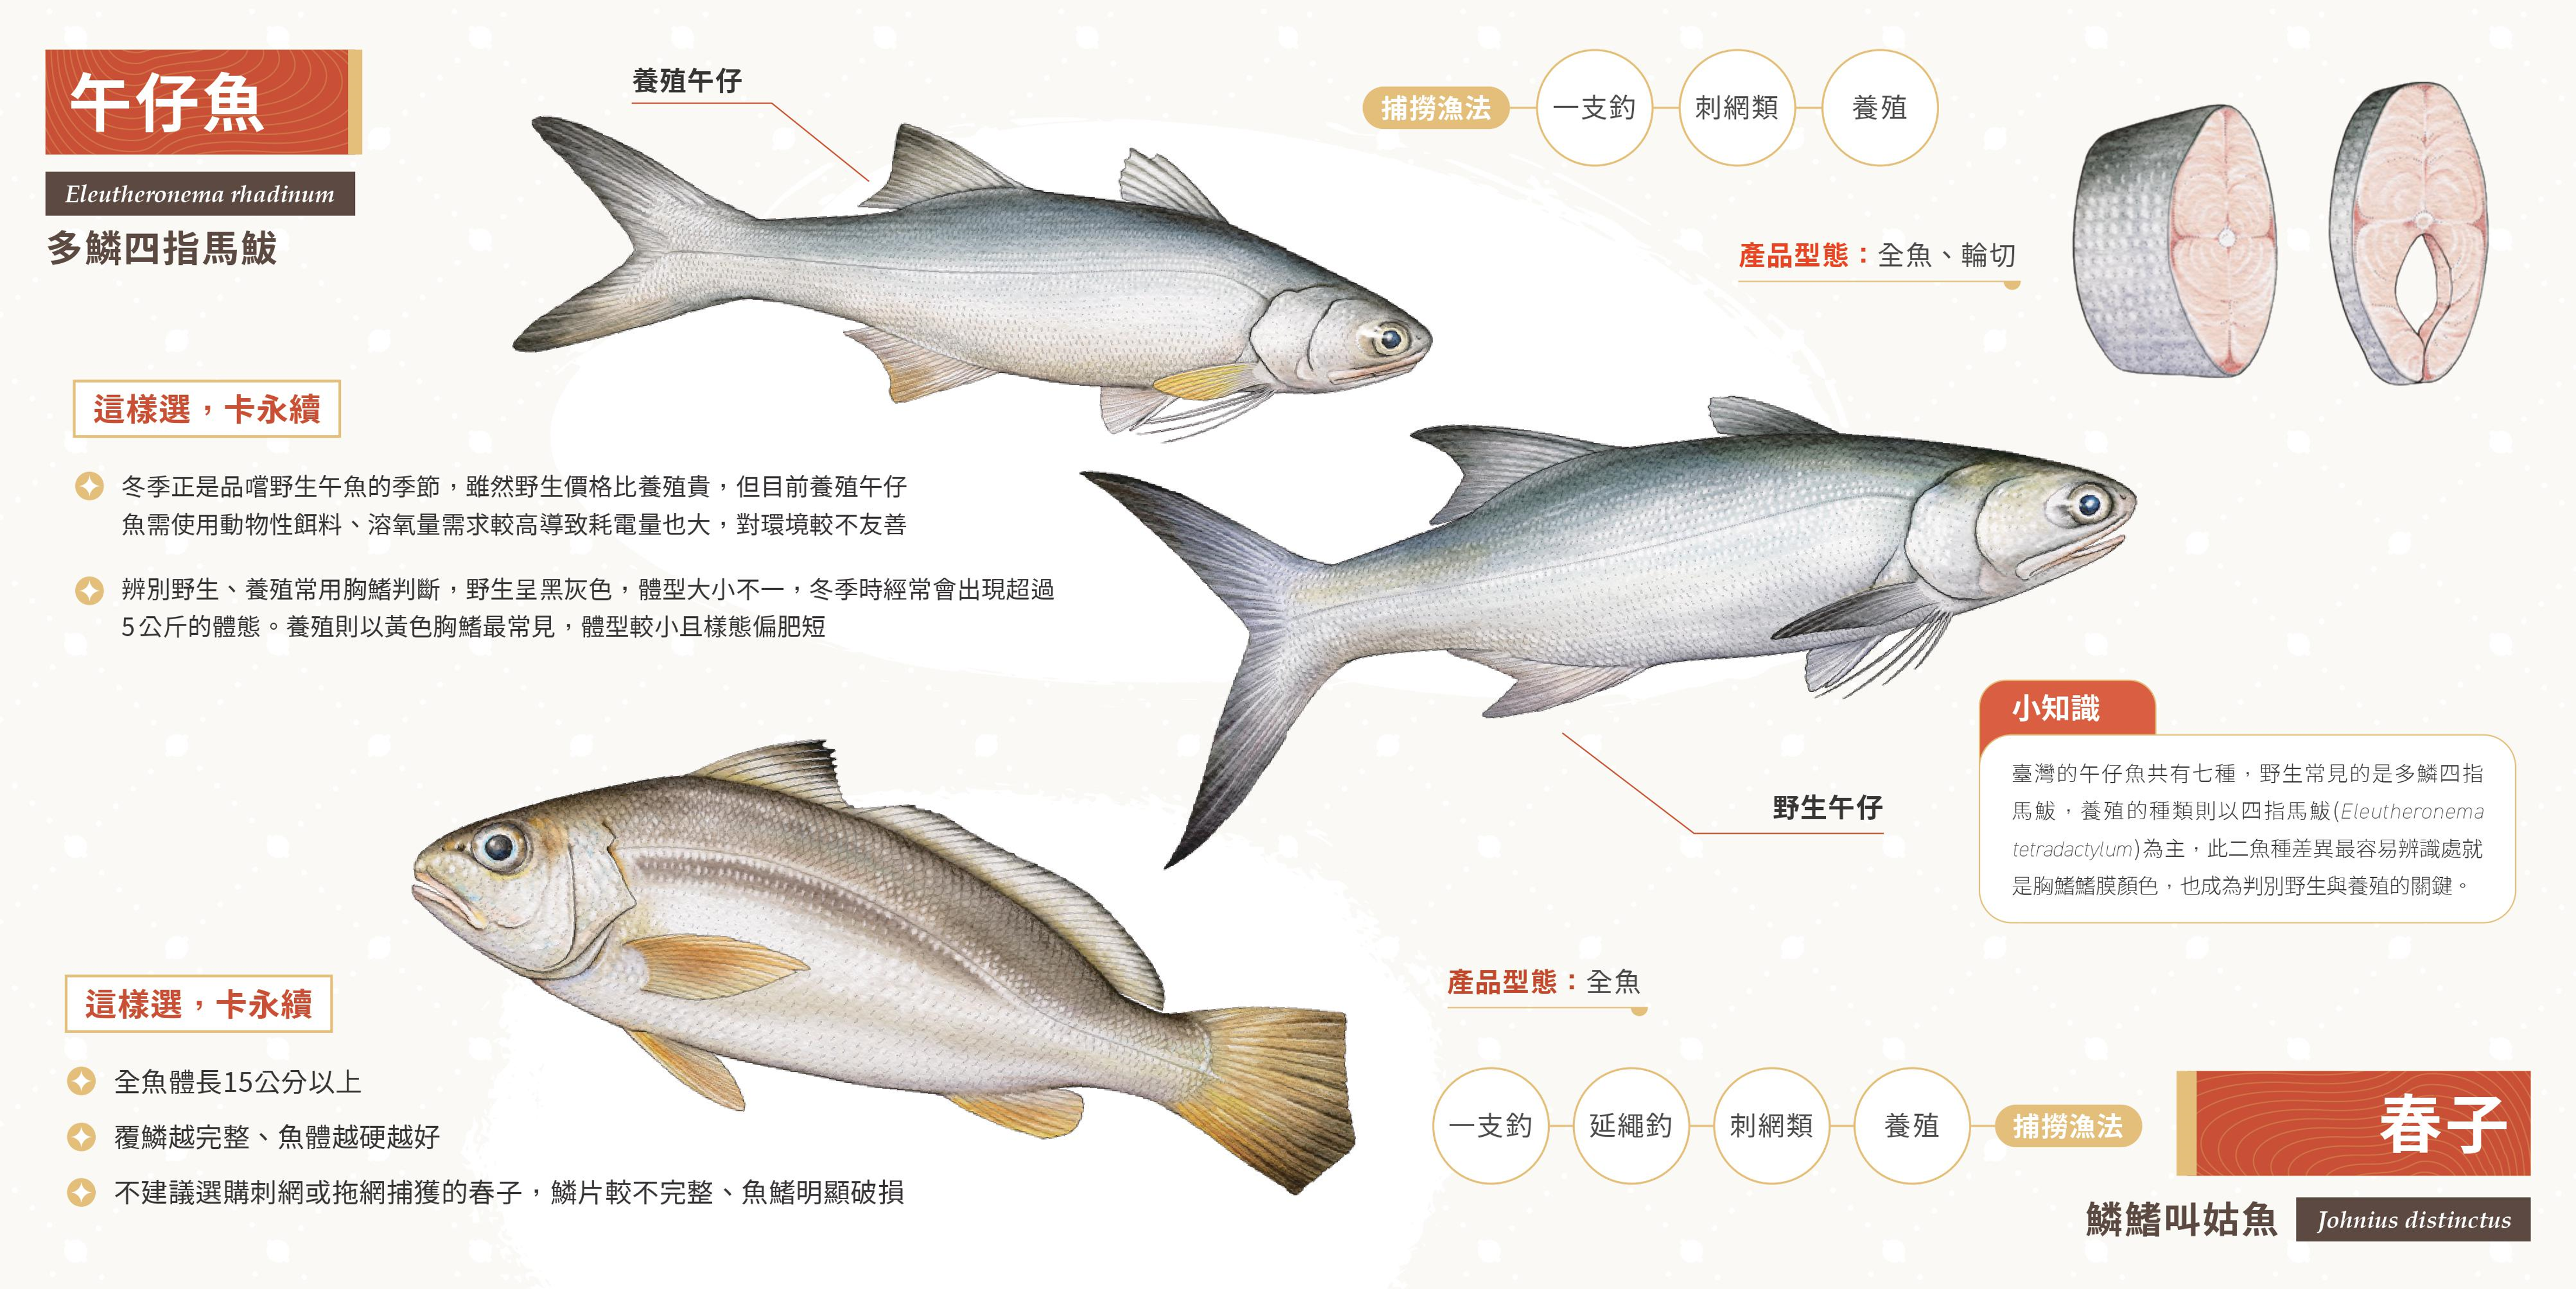 綠色和平推出冬季版《永續海鮮選購手冊》，其中午仔魚是較適合在冬季食用的魚種，建議消費者選擇野生而非養殖的午仔魚。